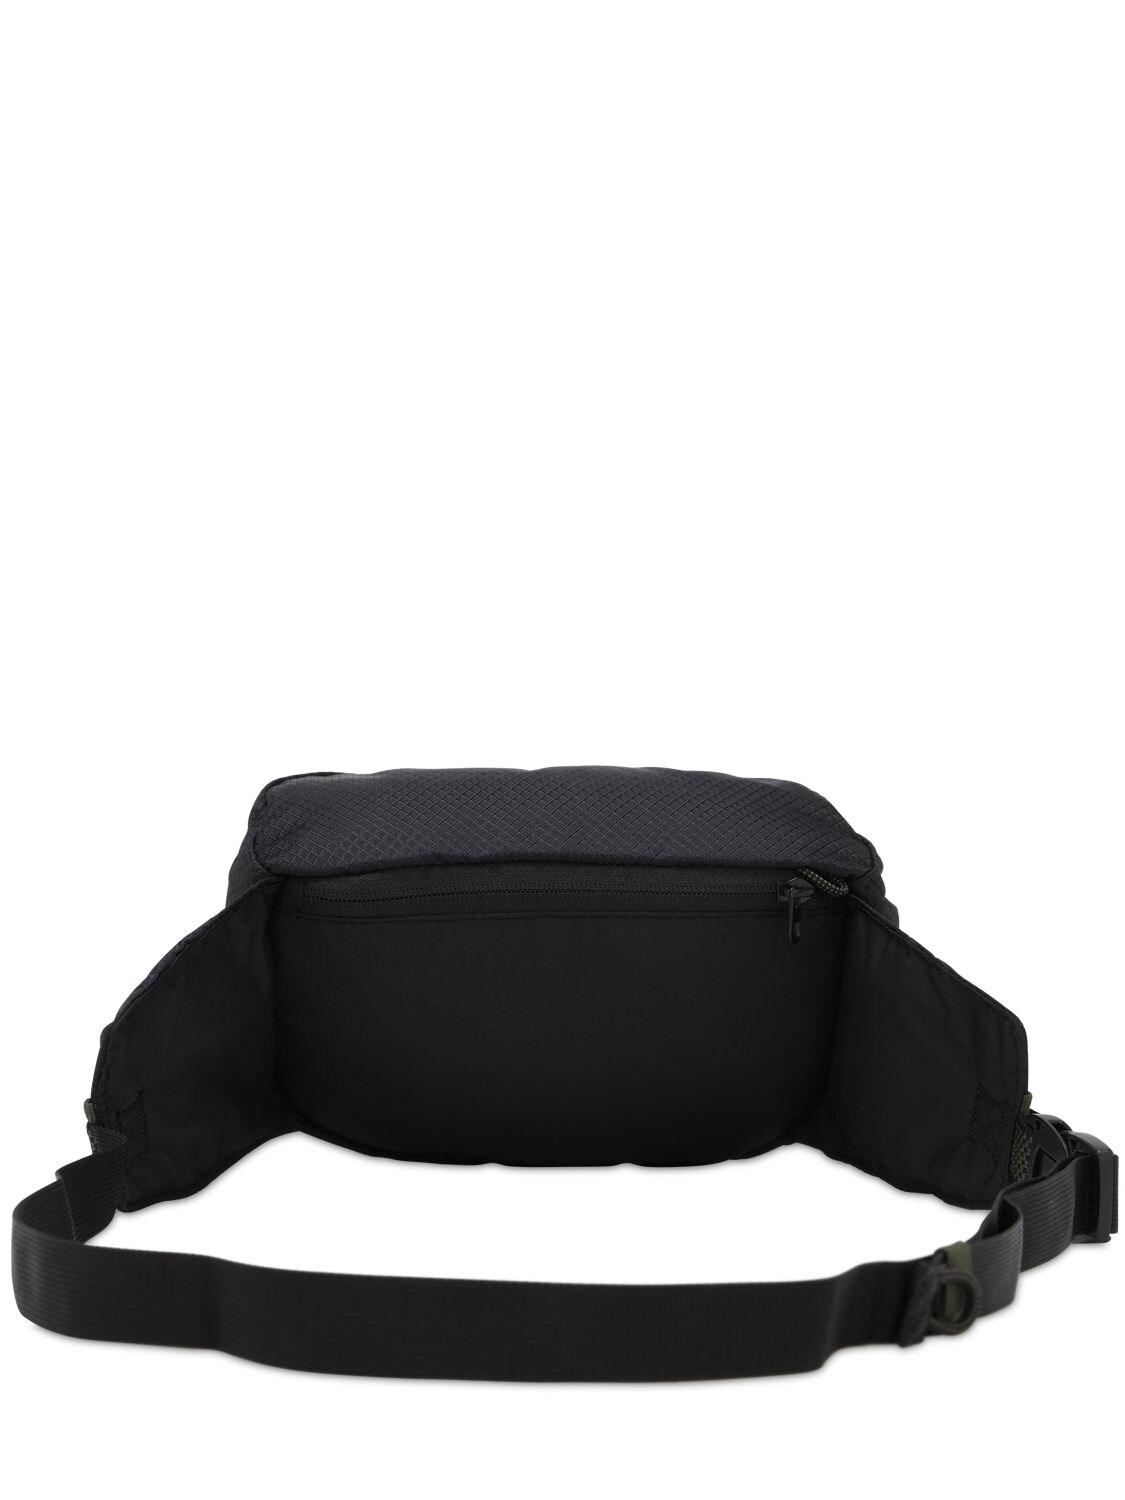 Nike Synthetic Acg Karst Belt Bag in Black for Men - Save 29% - Lyst